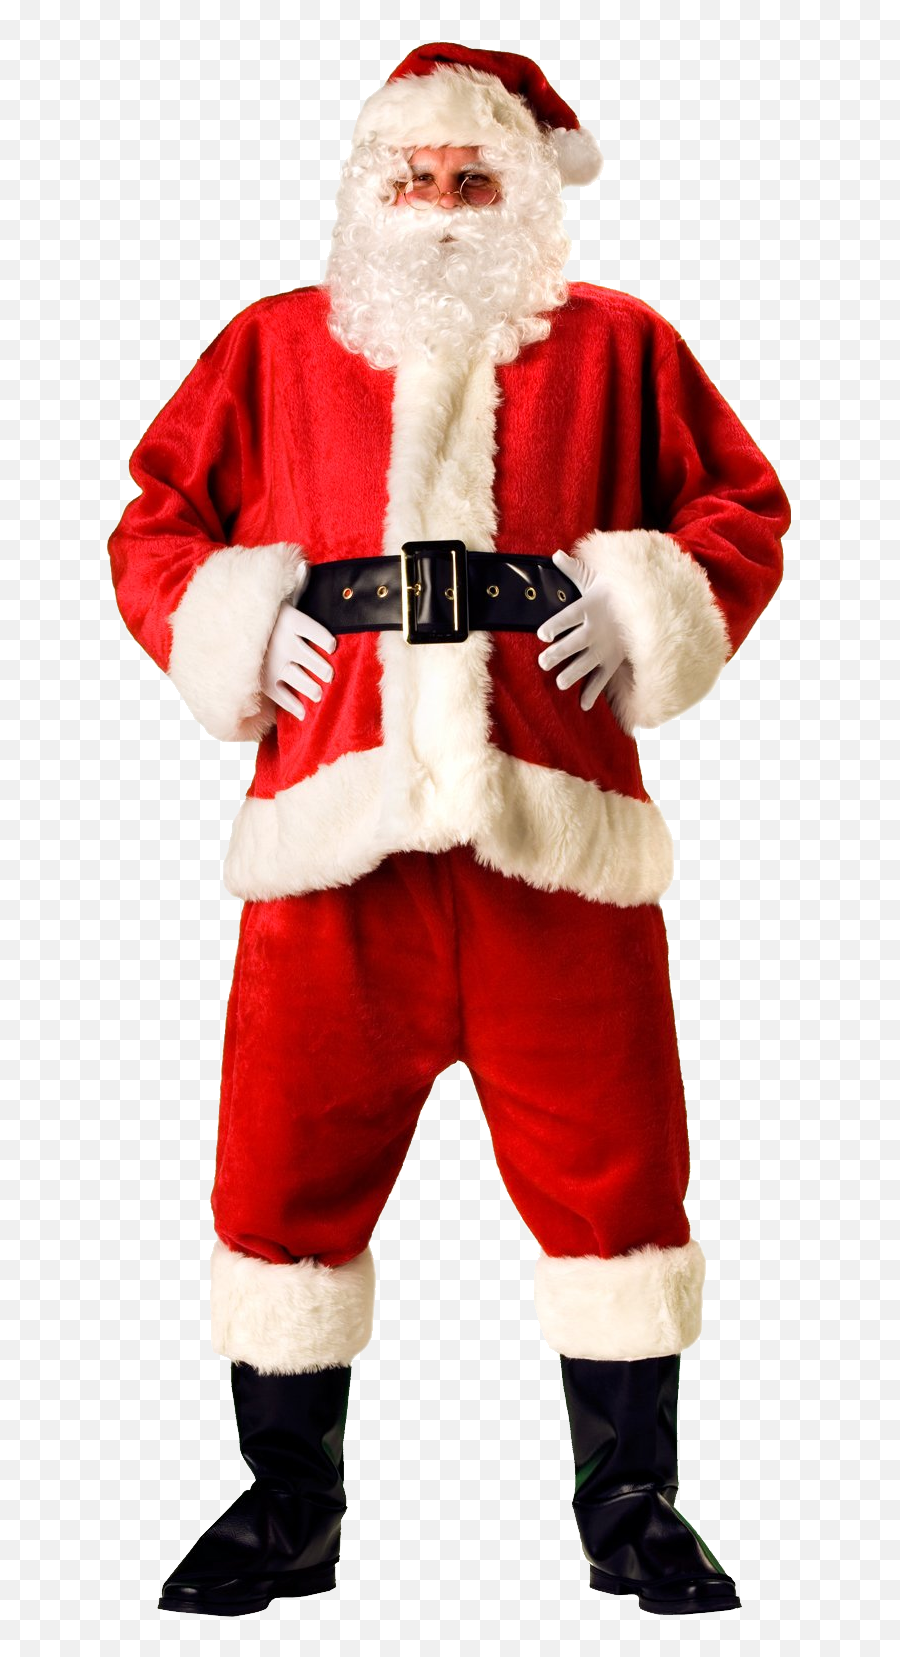 Santa Claus Transparent Png Image - Santa Claus Suit Png,Santa Transparent Background